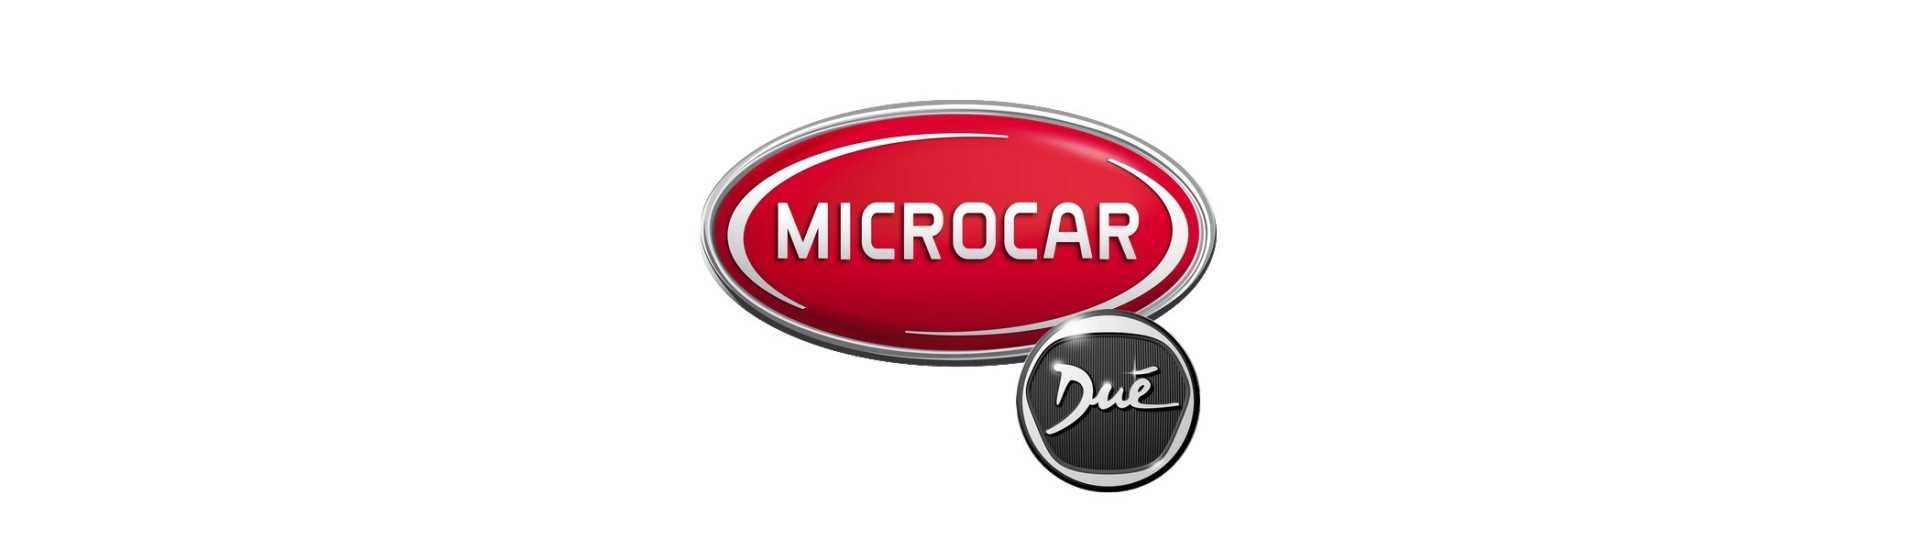 Blocul tăcut la cel mai bun preț pentru o mașină fără permis Microcar Dué